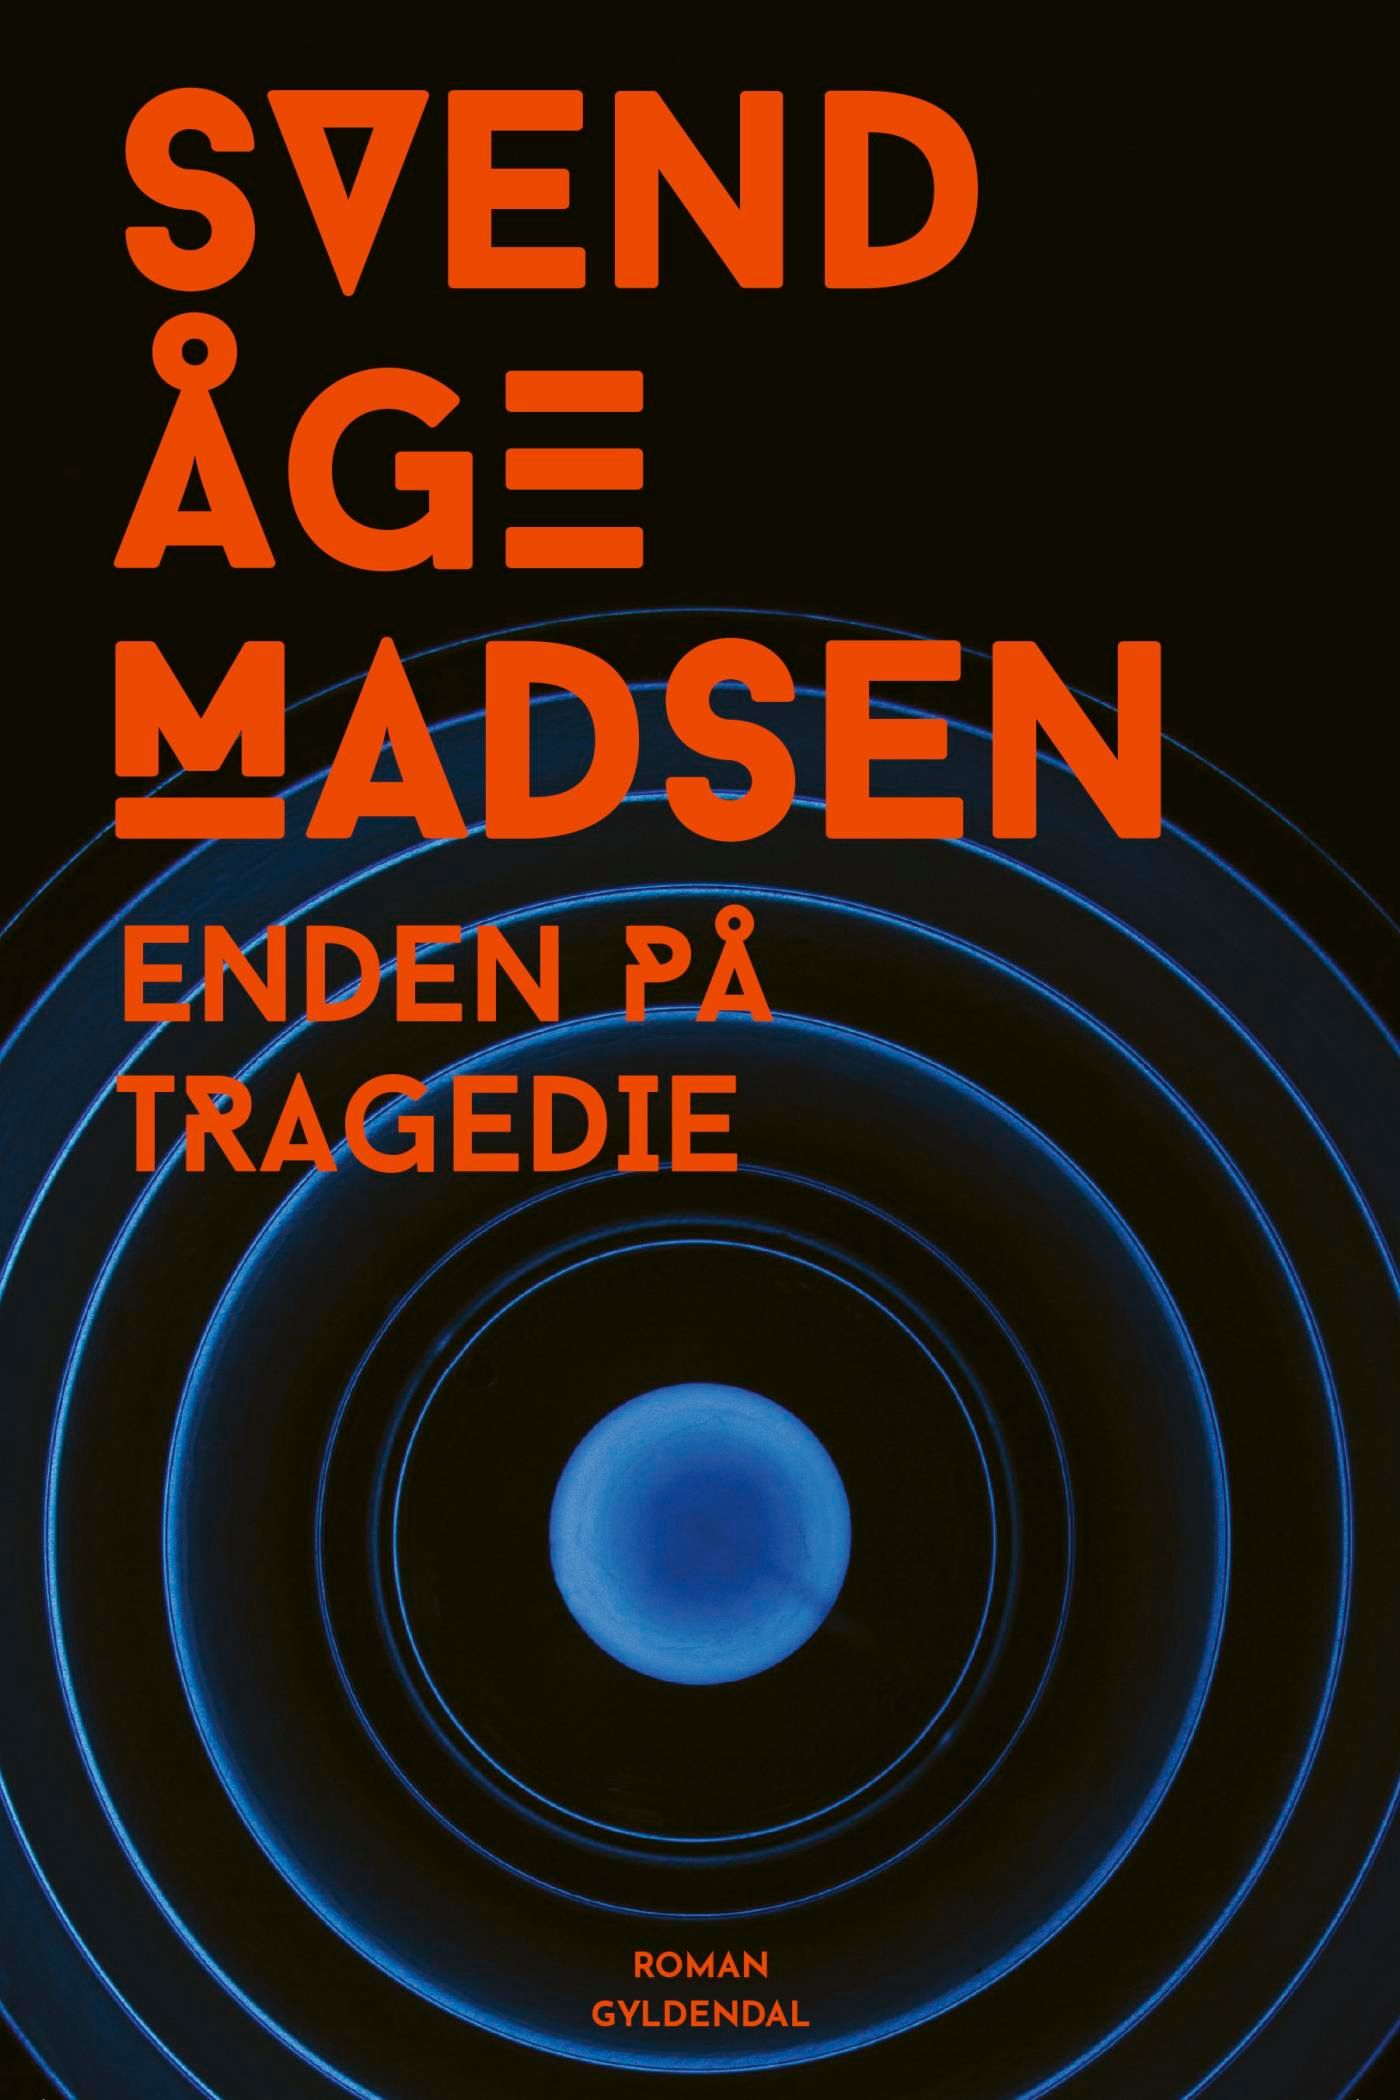 Enden på tragedie, eBook by Svend Åge Madsen